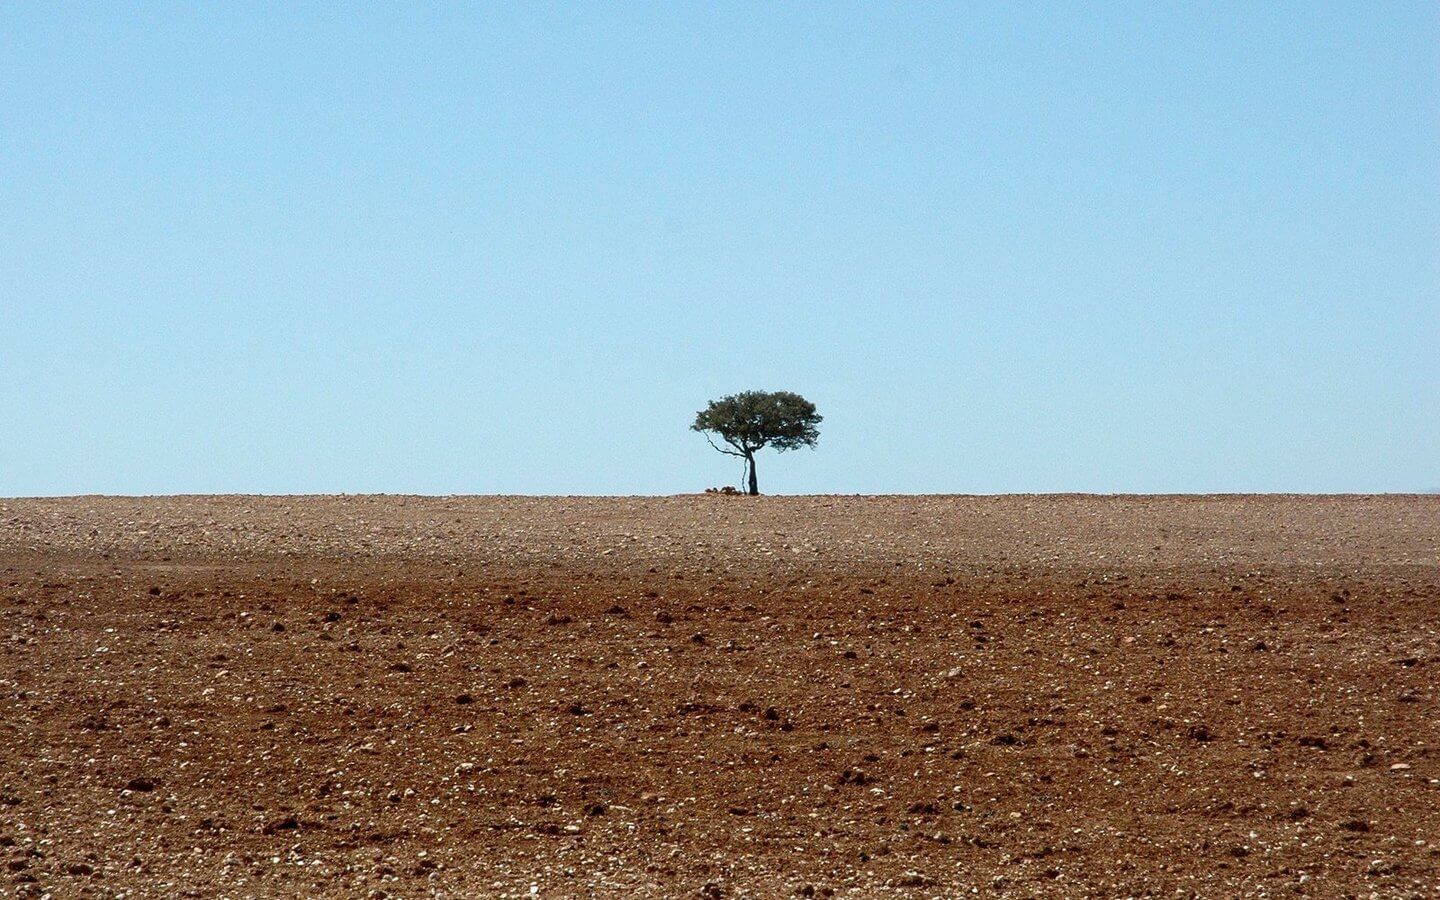 The loneliest tree